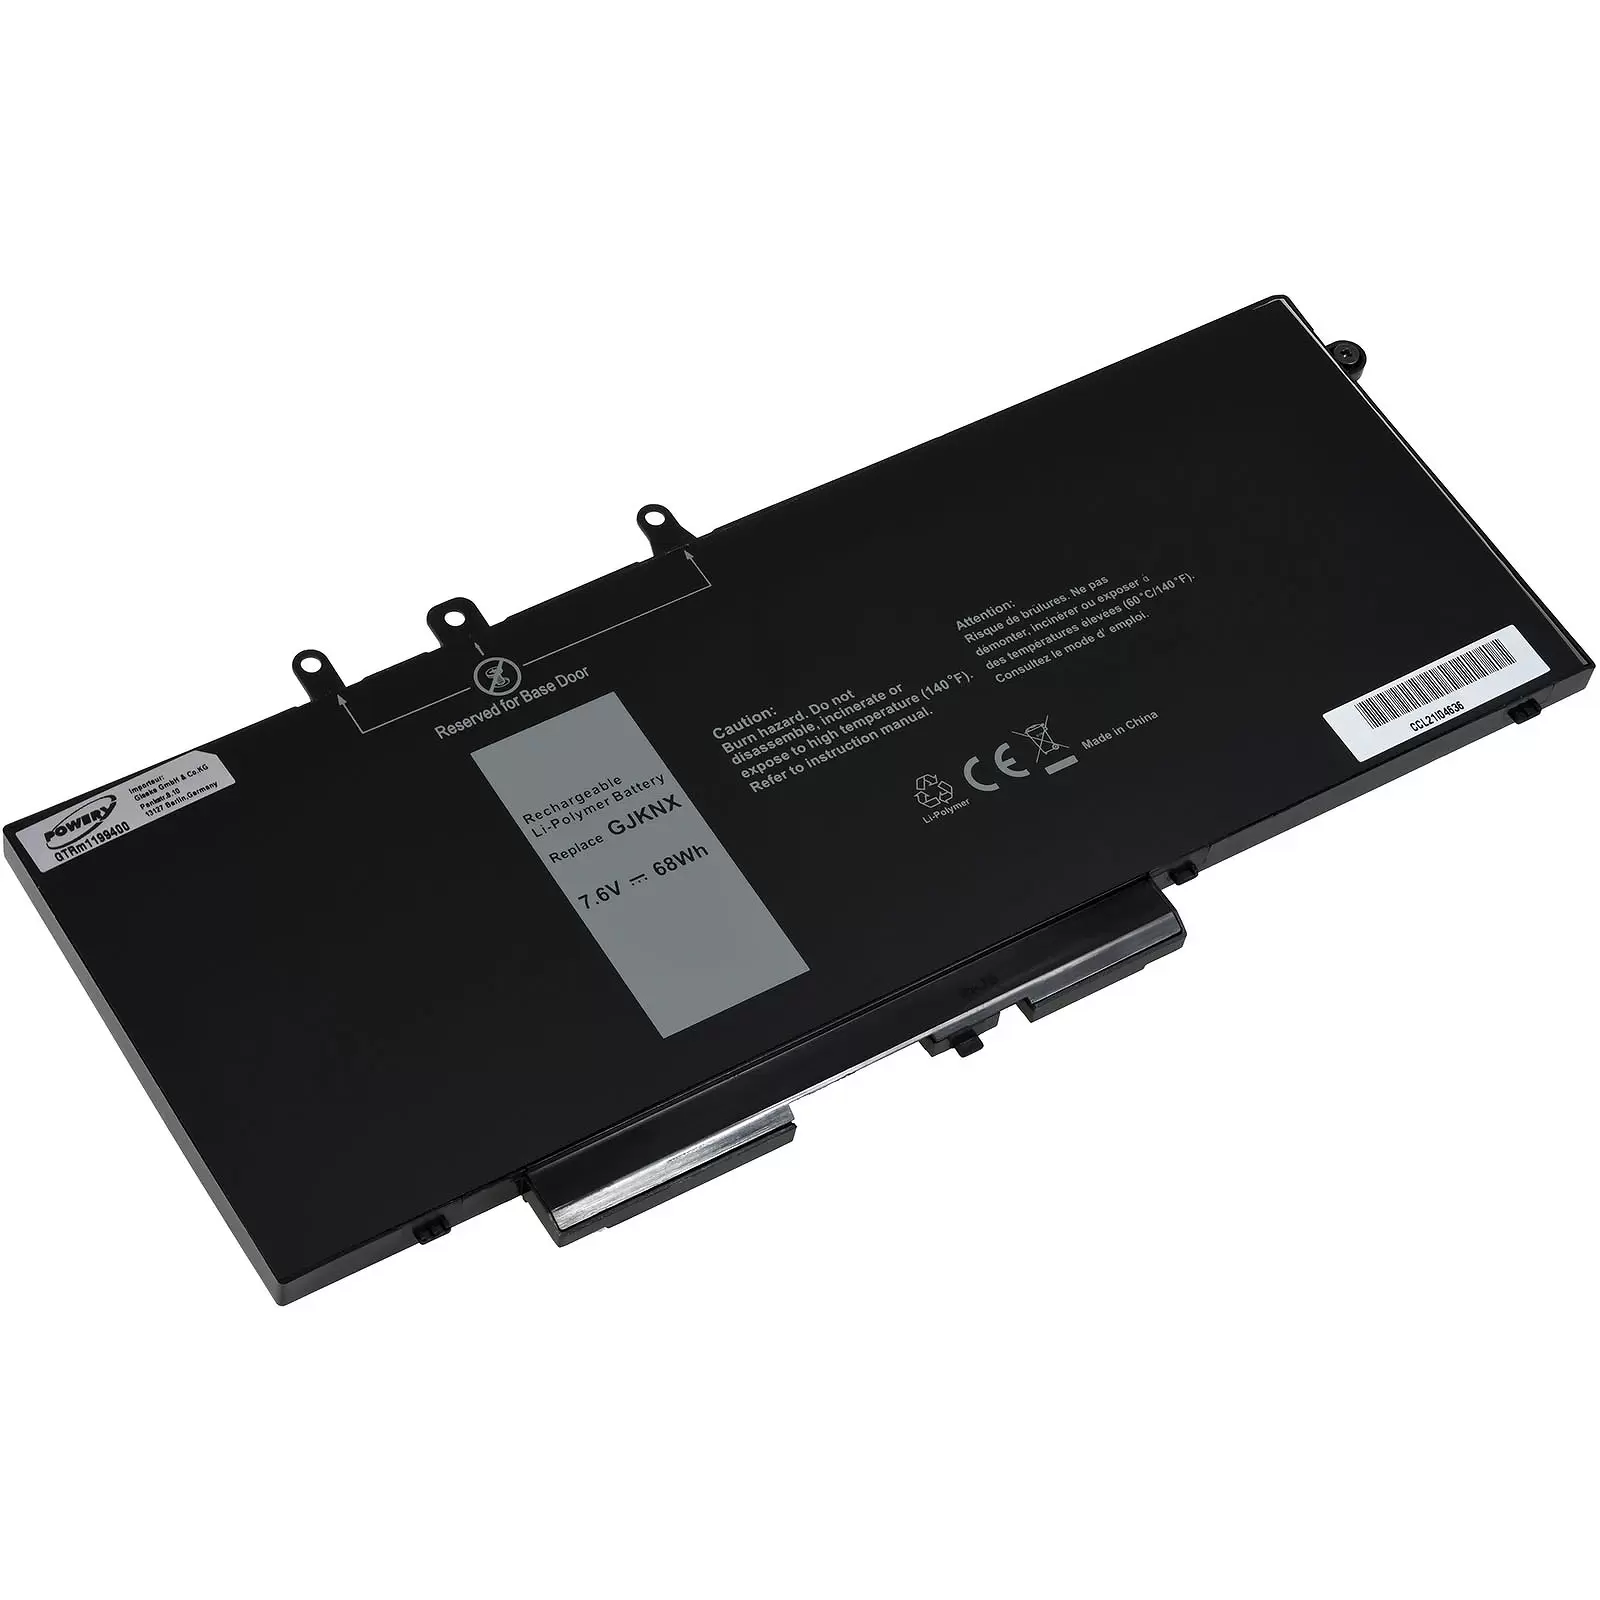 Akku für Laptop Dell Precision 3520 / Latitude 5480 / 5490 / Typ GJKNX